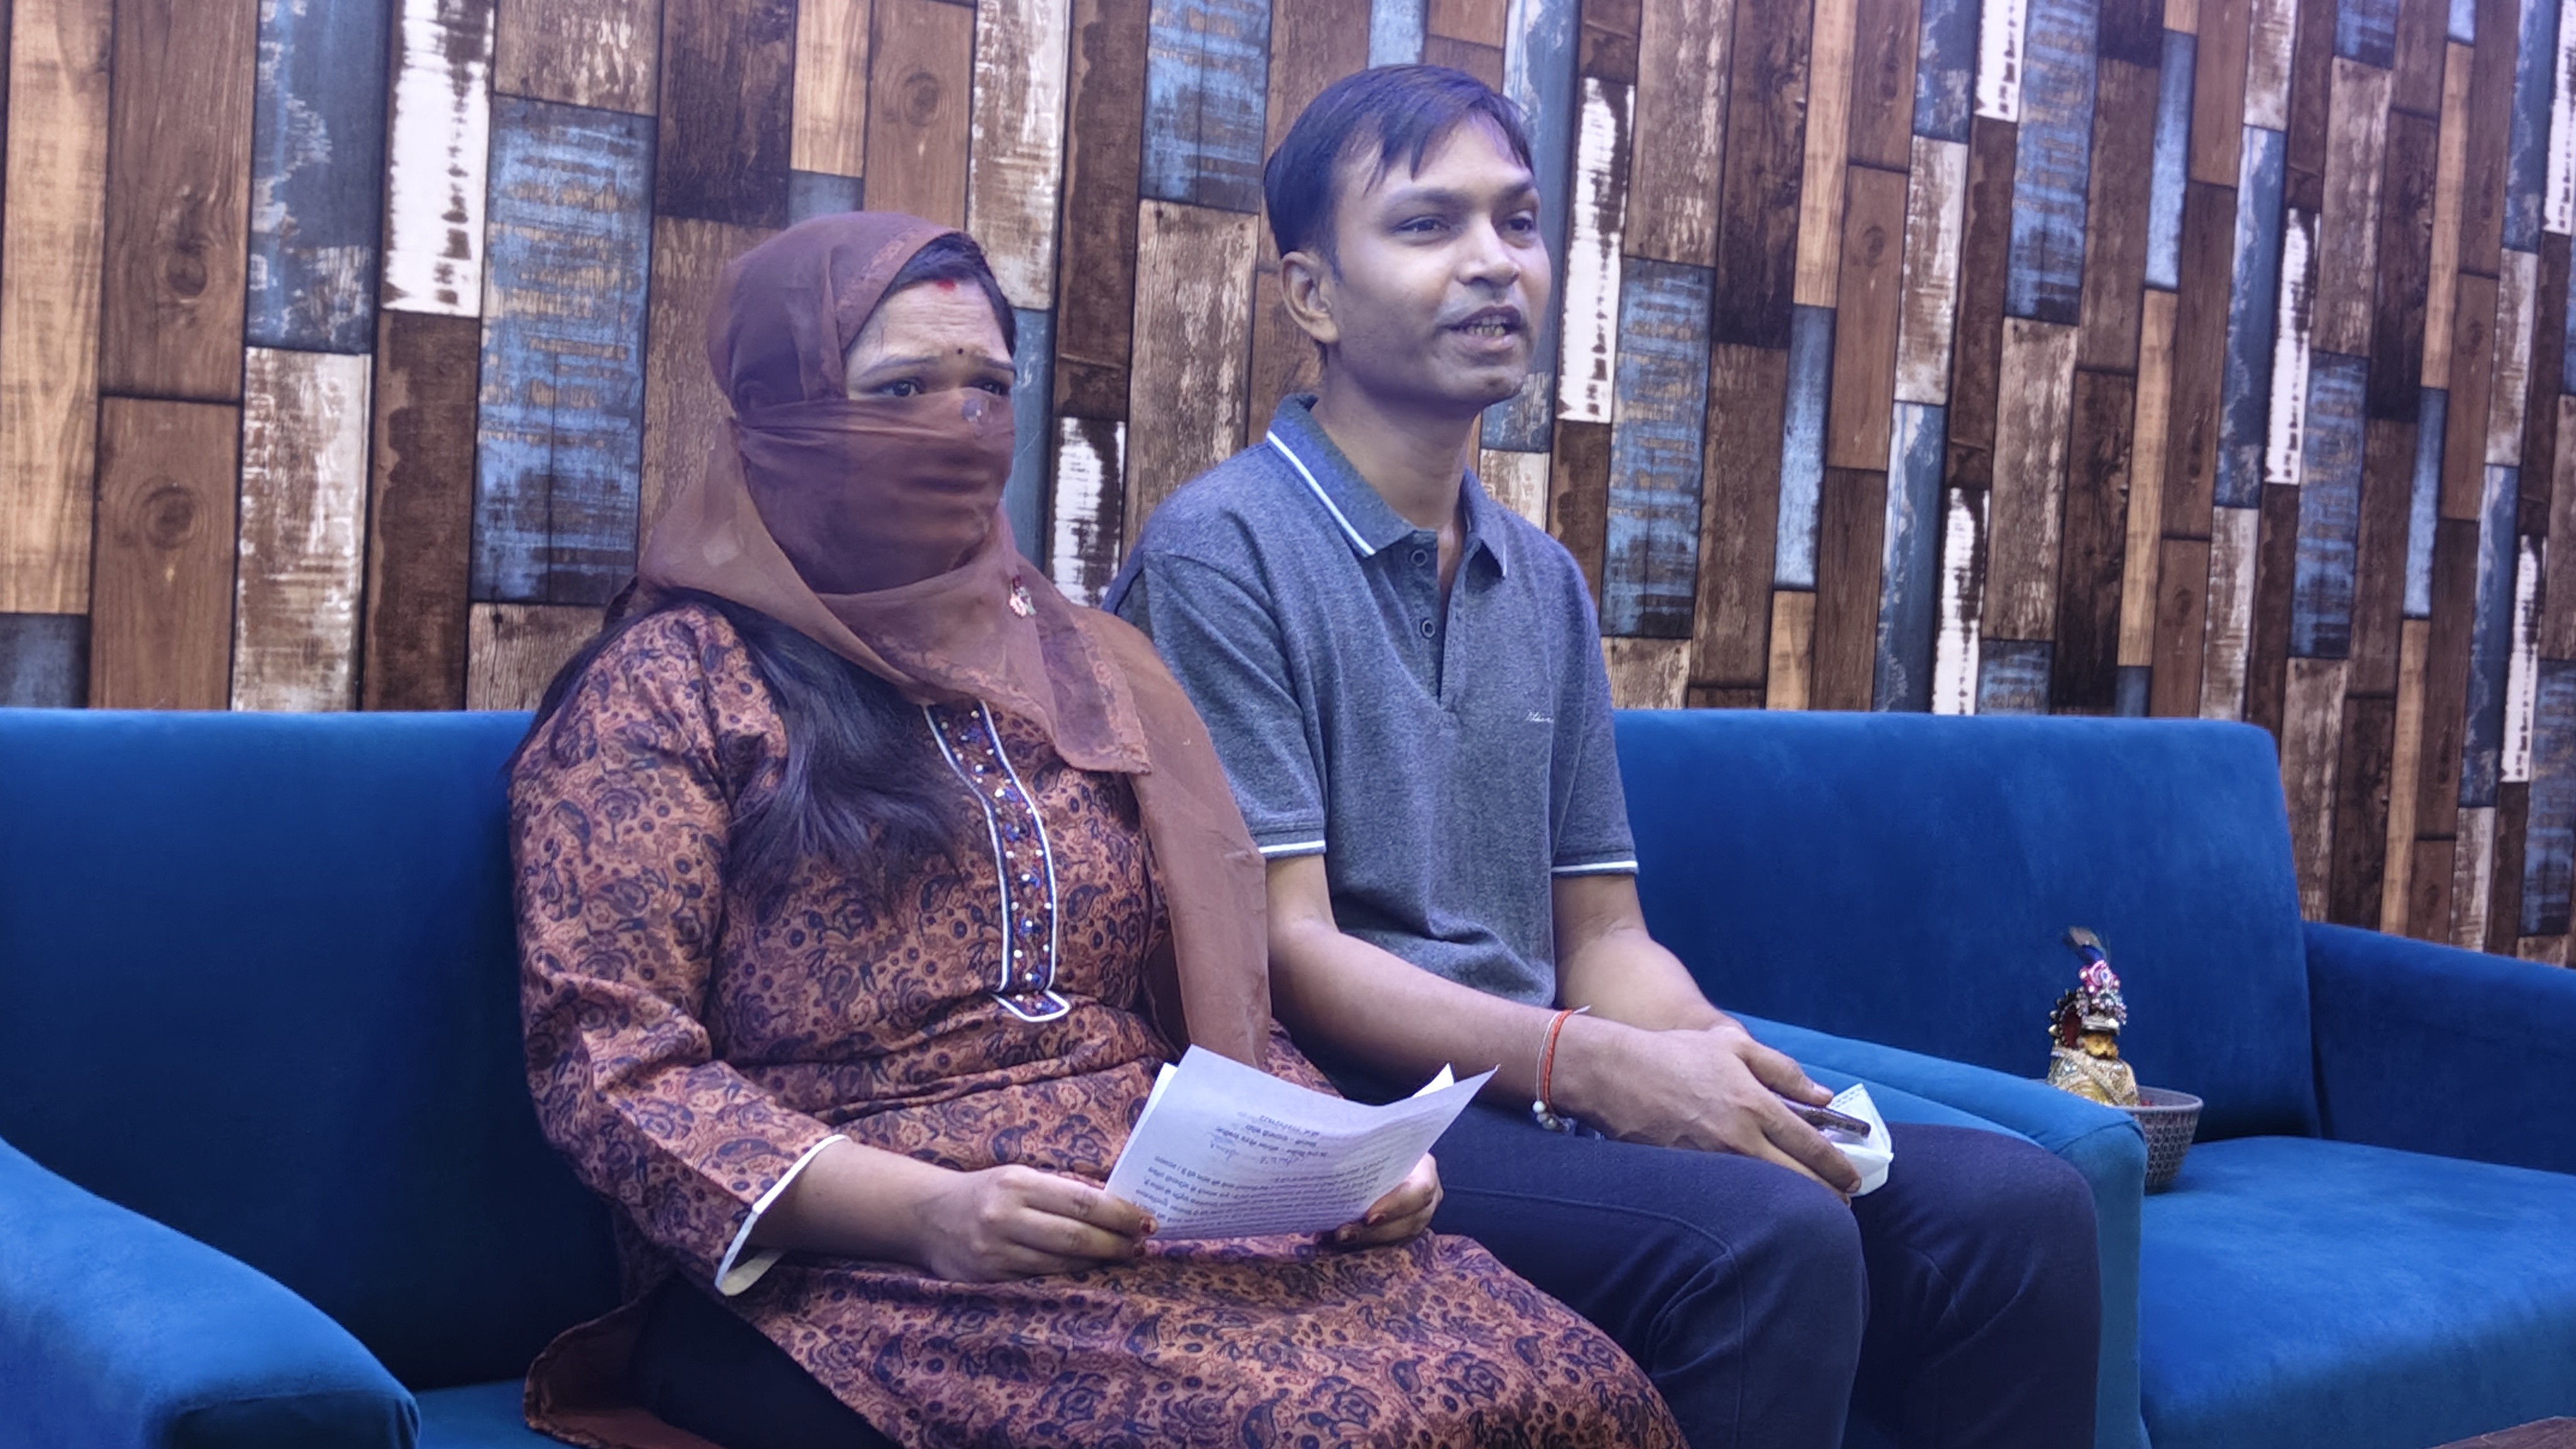 ब्याज माफिया वासुदेव से परेशान है एकदम पति पैसे लौटाने के बाद भी नहीं दे रहे चेक व दस्तावेज, पुलिस से कार्यवाही की मांग